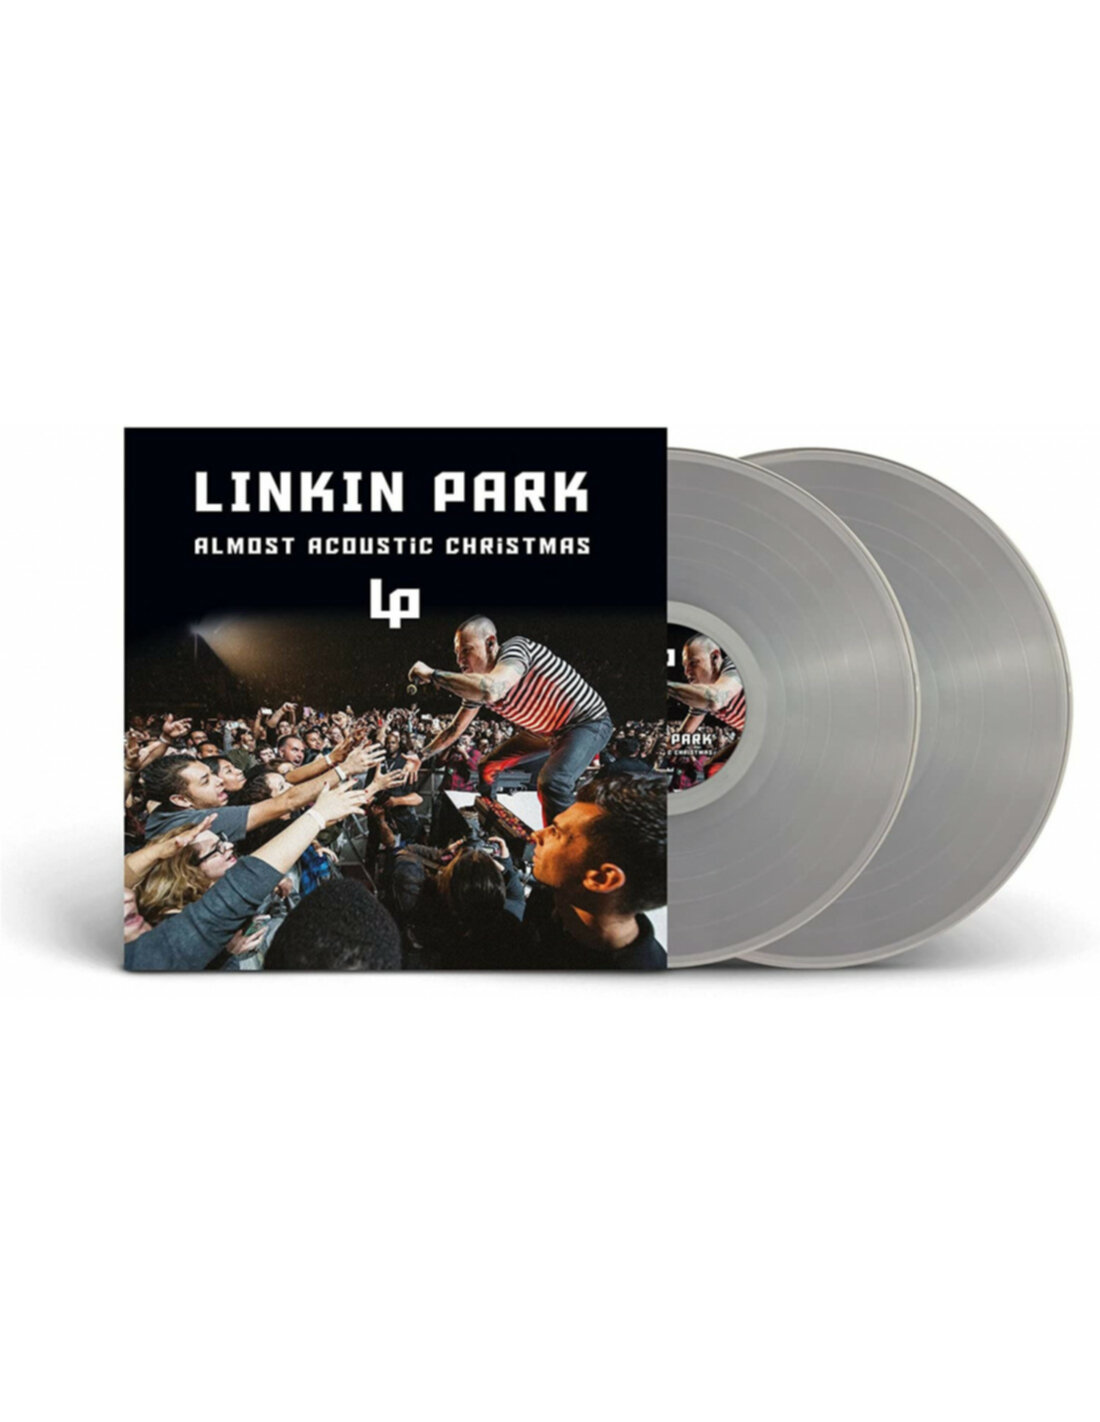 Linkin Park - Almost Acoustic Christmas (Vinyl Clear) - solo 39,99 € Vinili  LP Pop vendita online